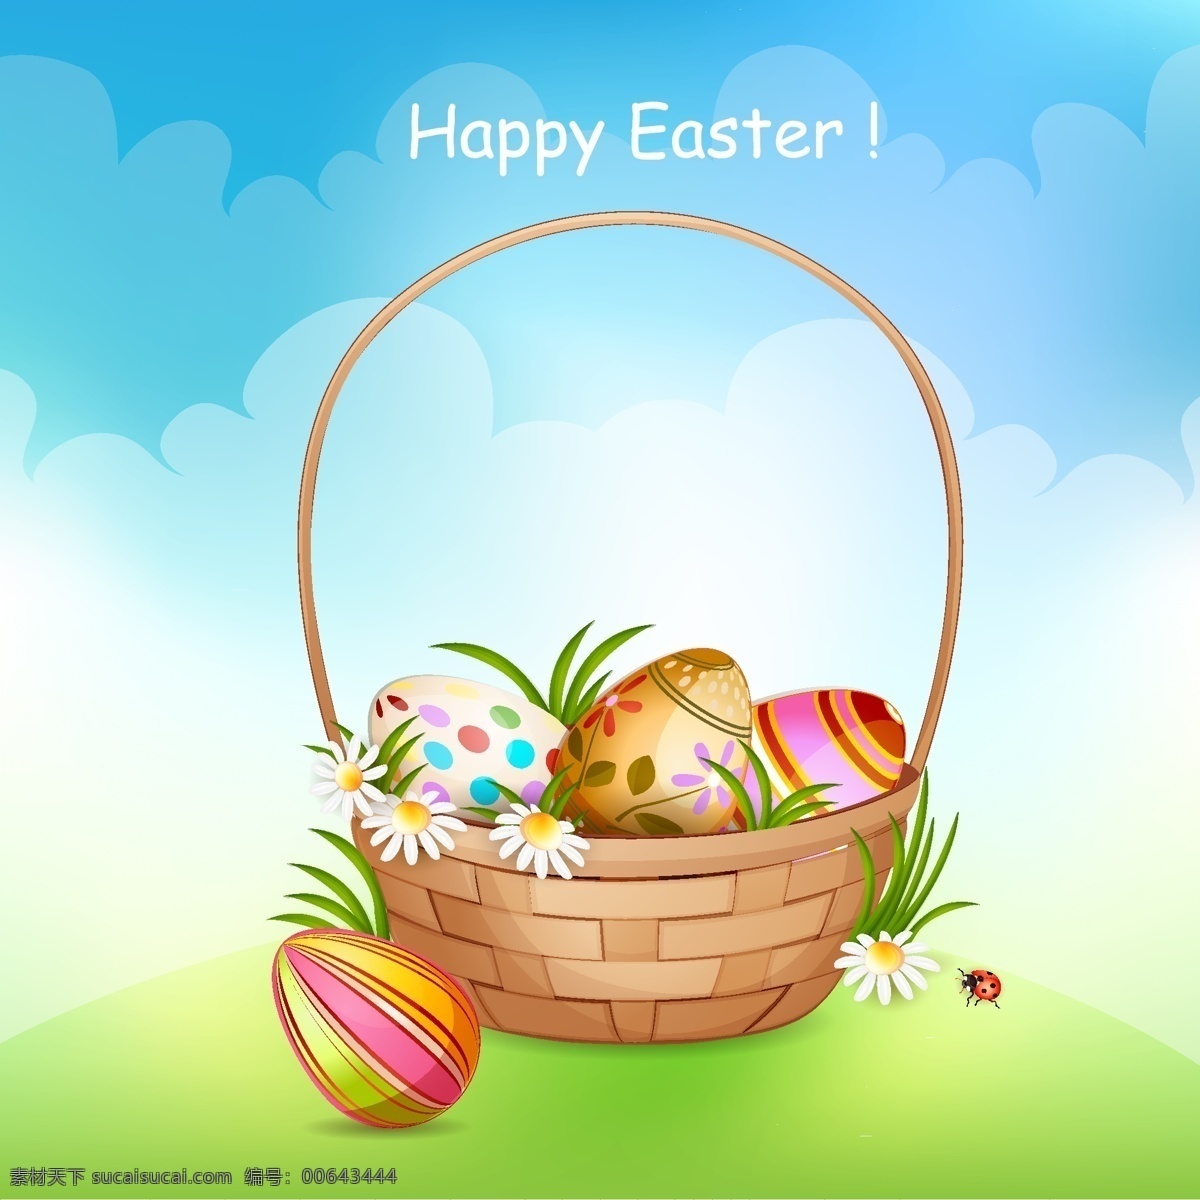 复活节 手绘 鸡蛋 彩蛋 矢量 节日素材 节日庆祝 文化艺术